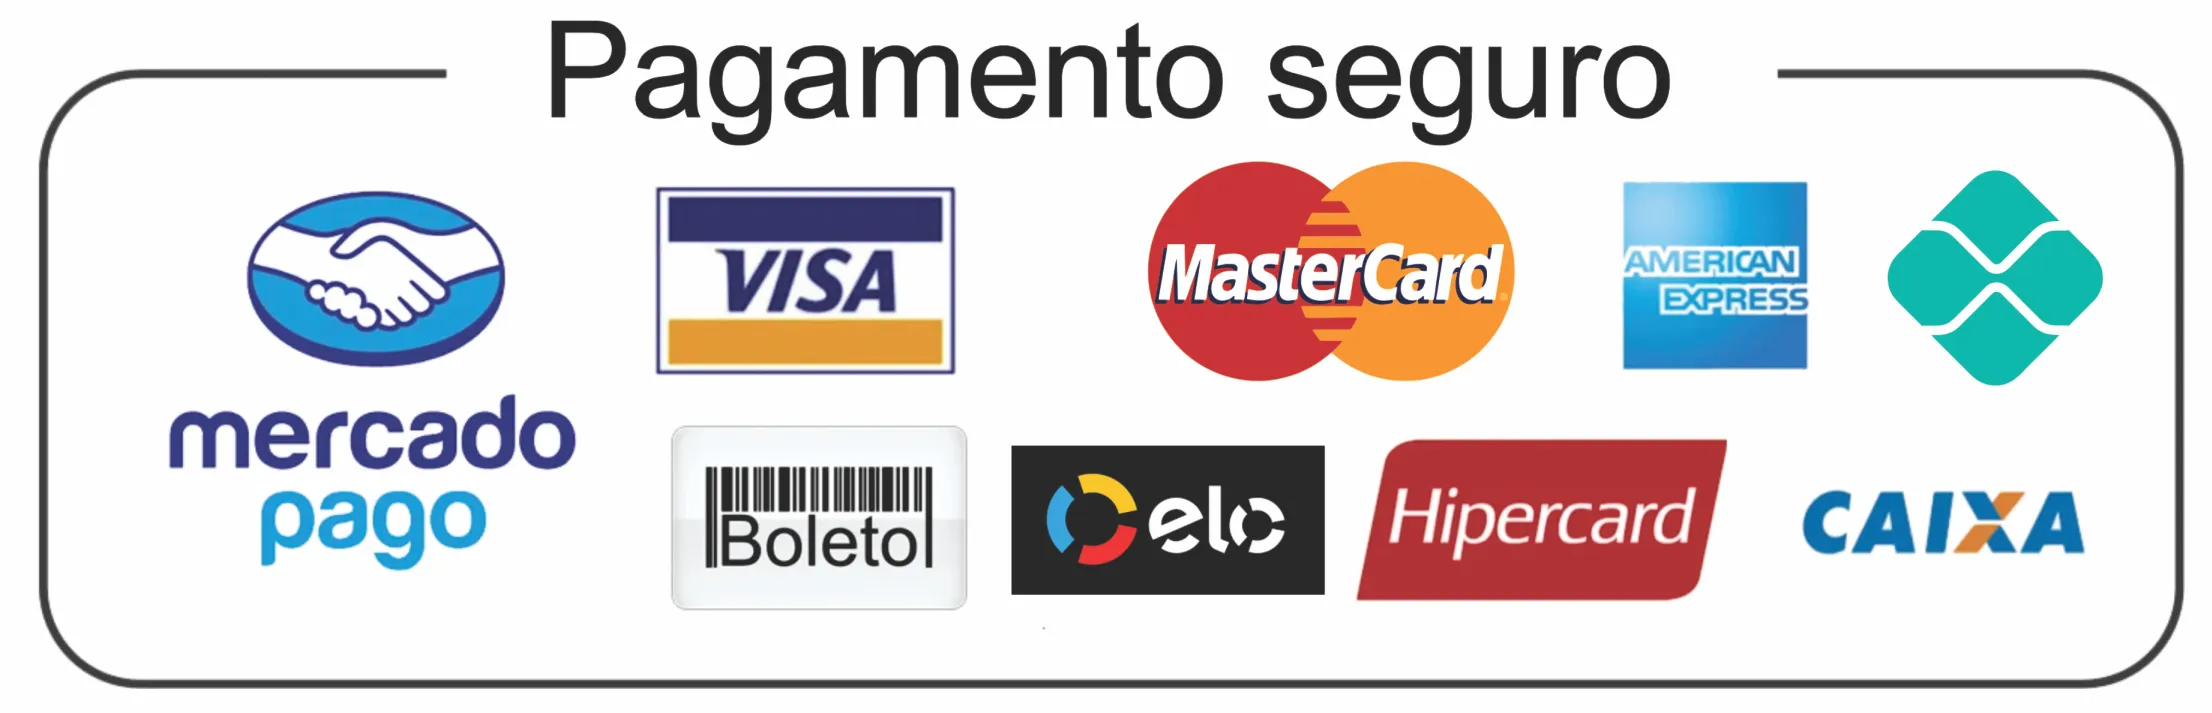 mercado_pago_formas_de_pagamento